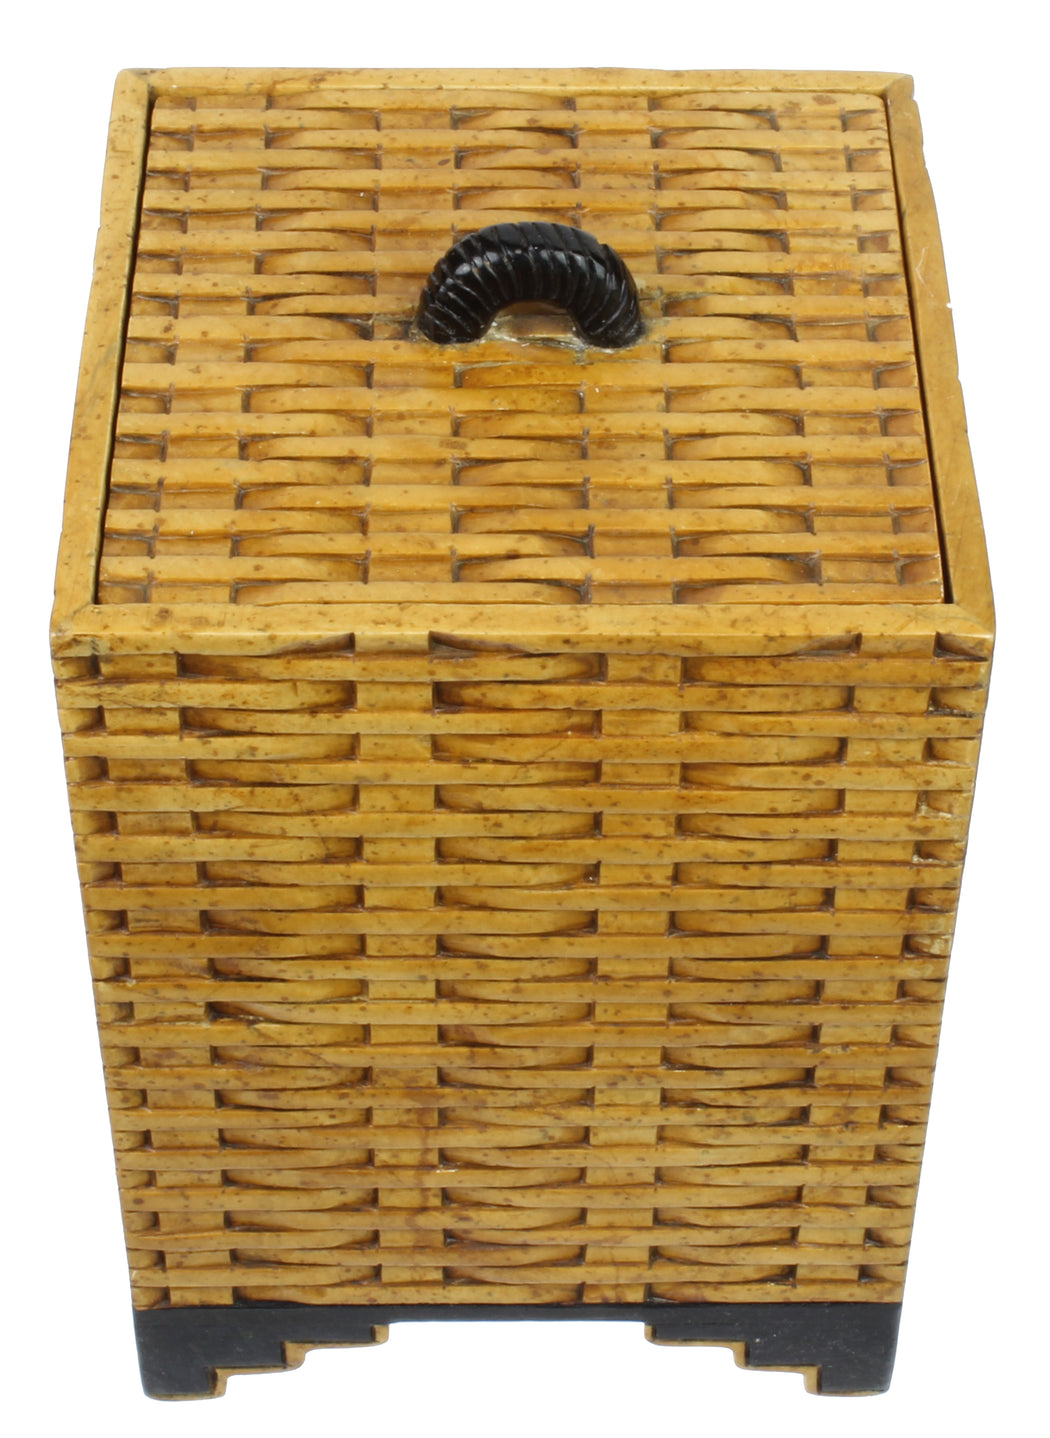 Wicker Weave - Soapstone Trinket Decor Lidded Box - Niger Bend